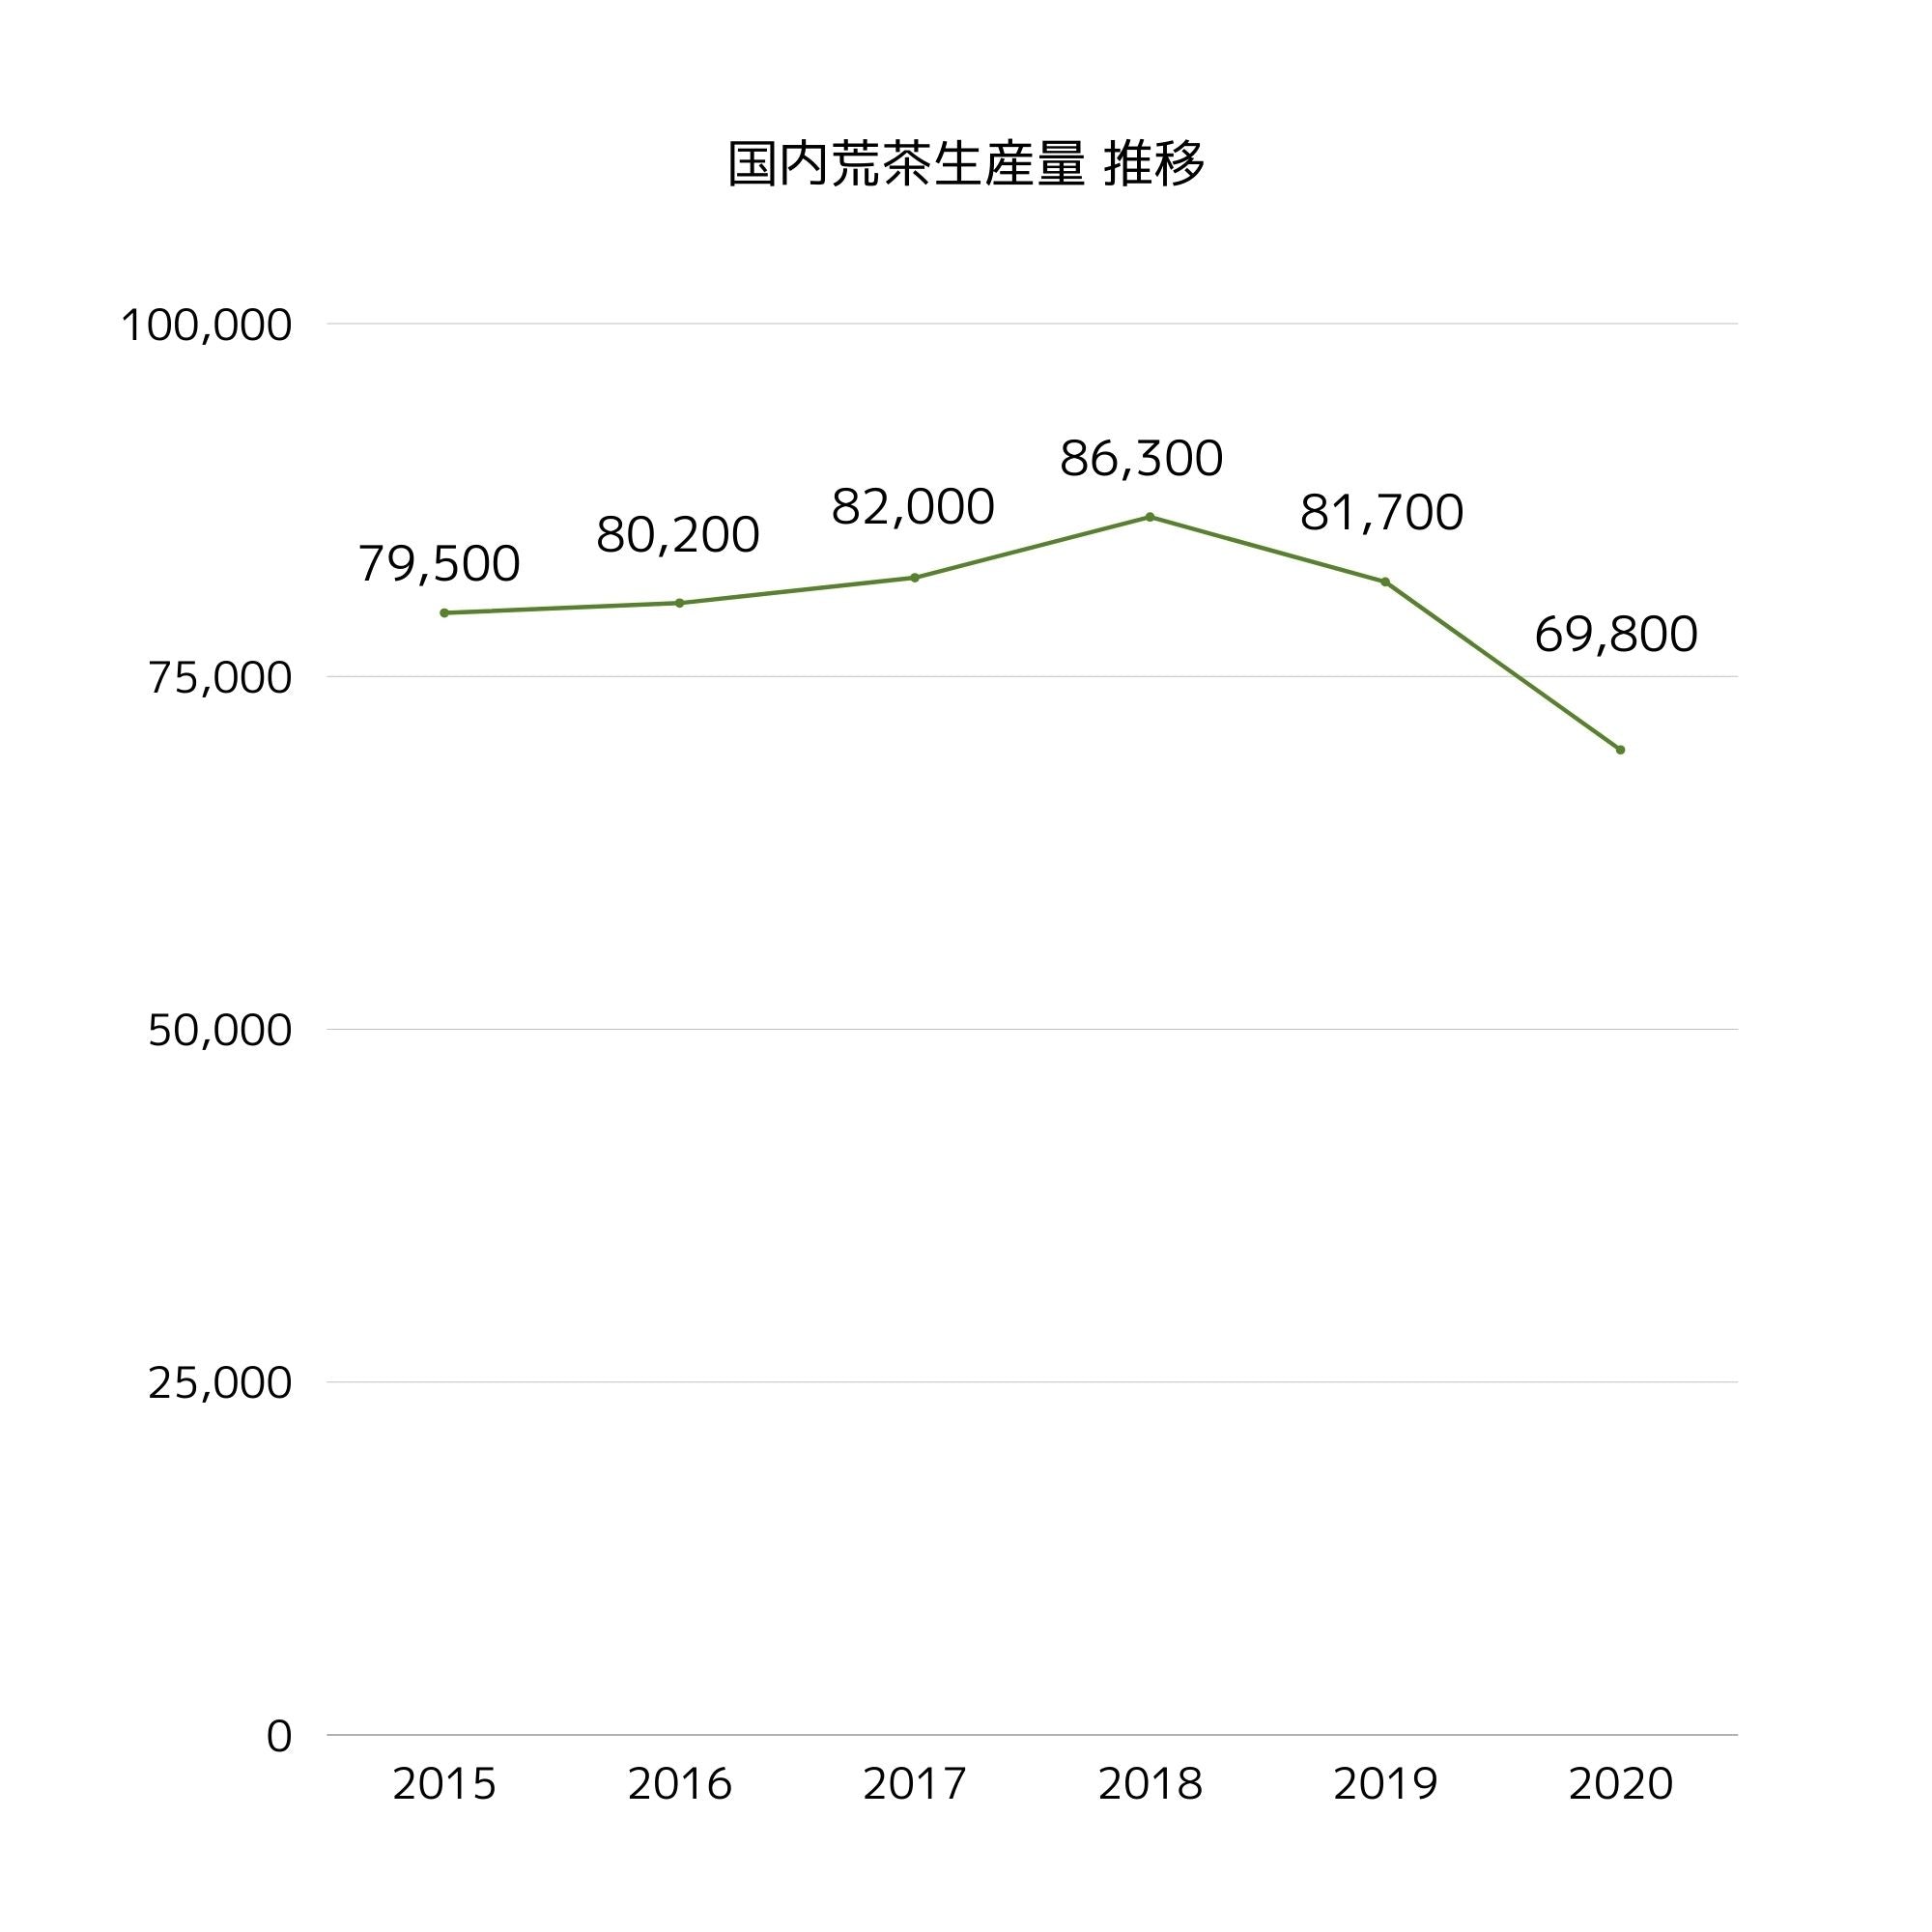 日本の荒茶生産量の推移